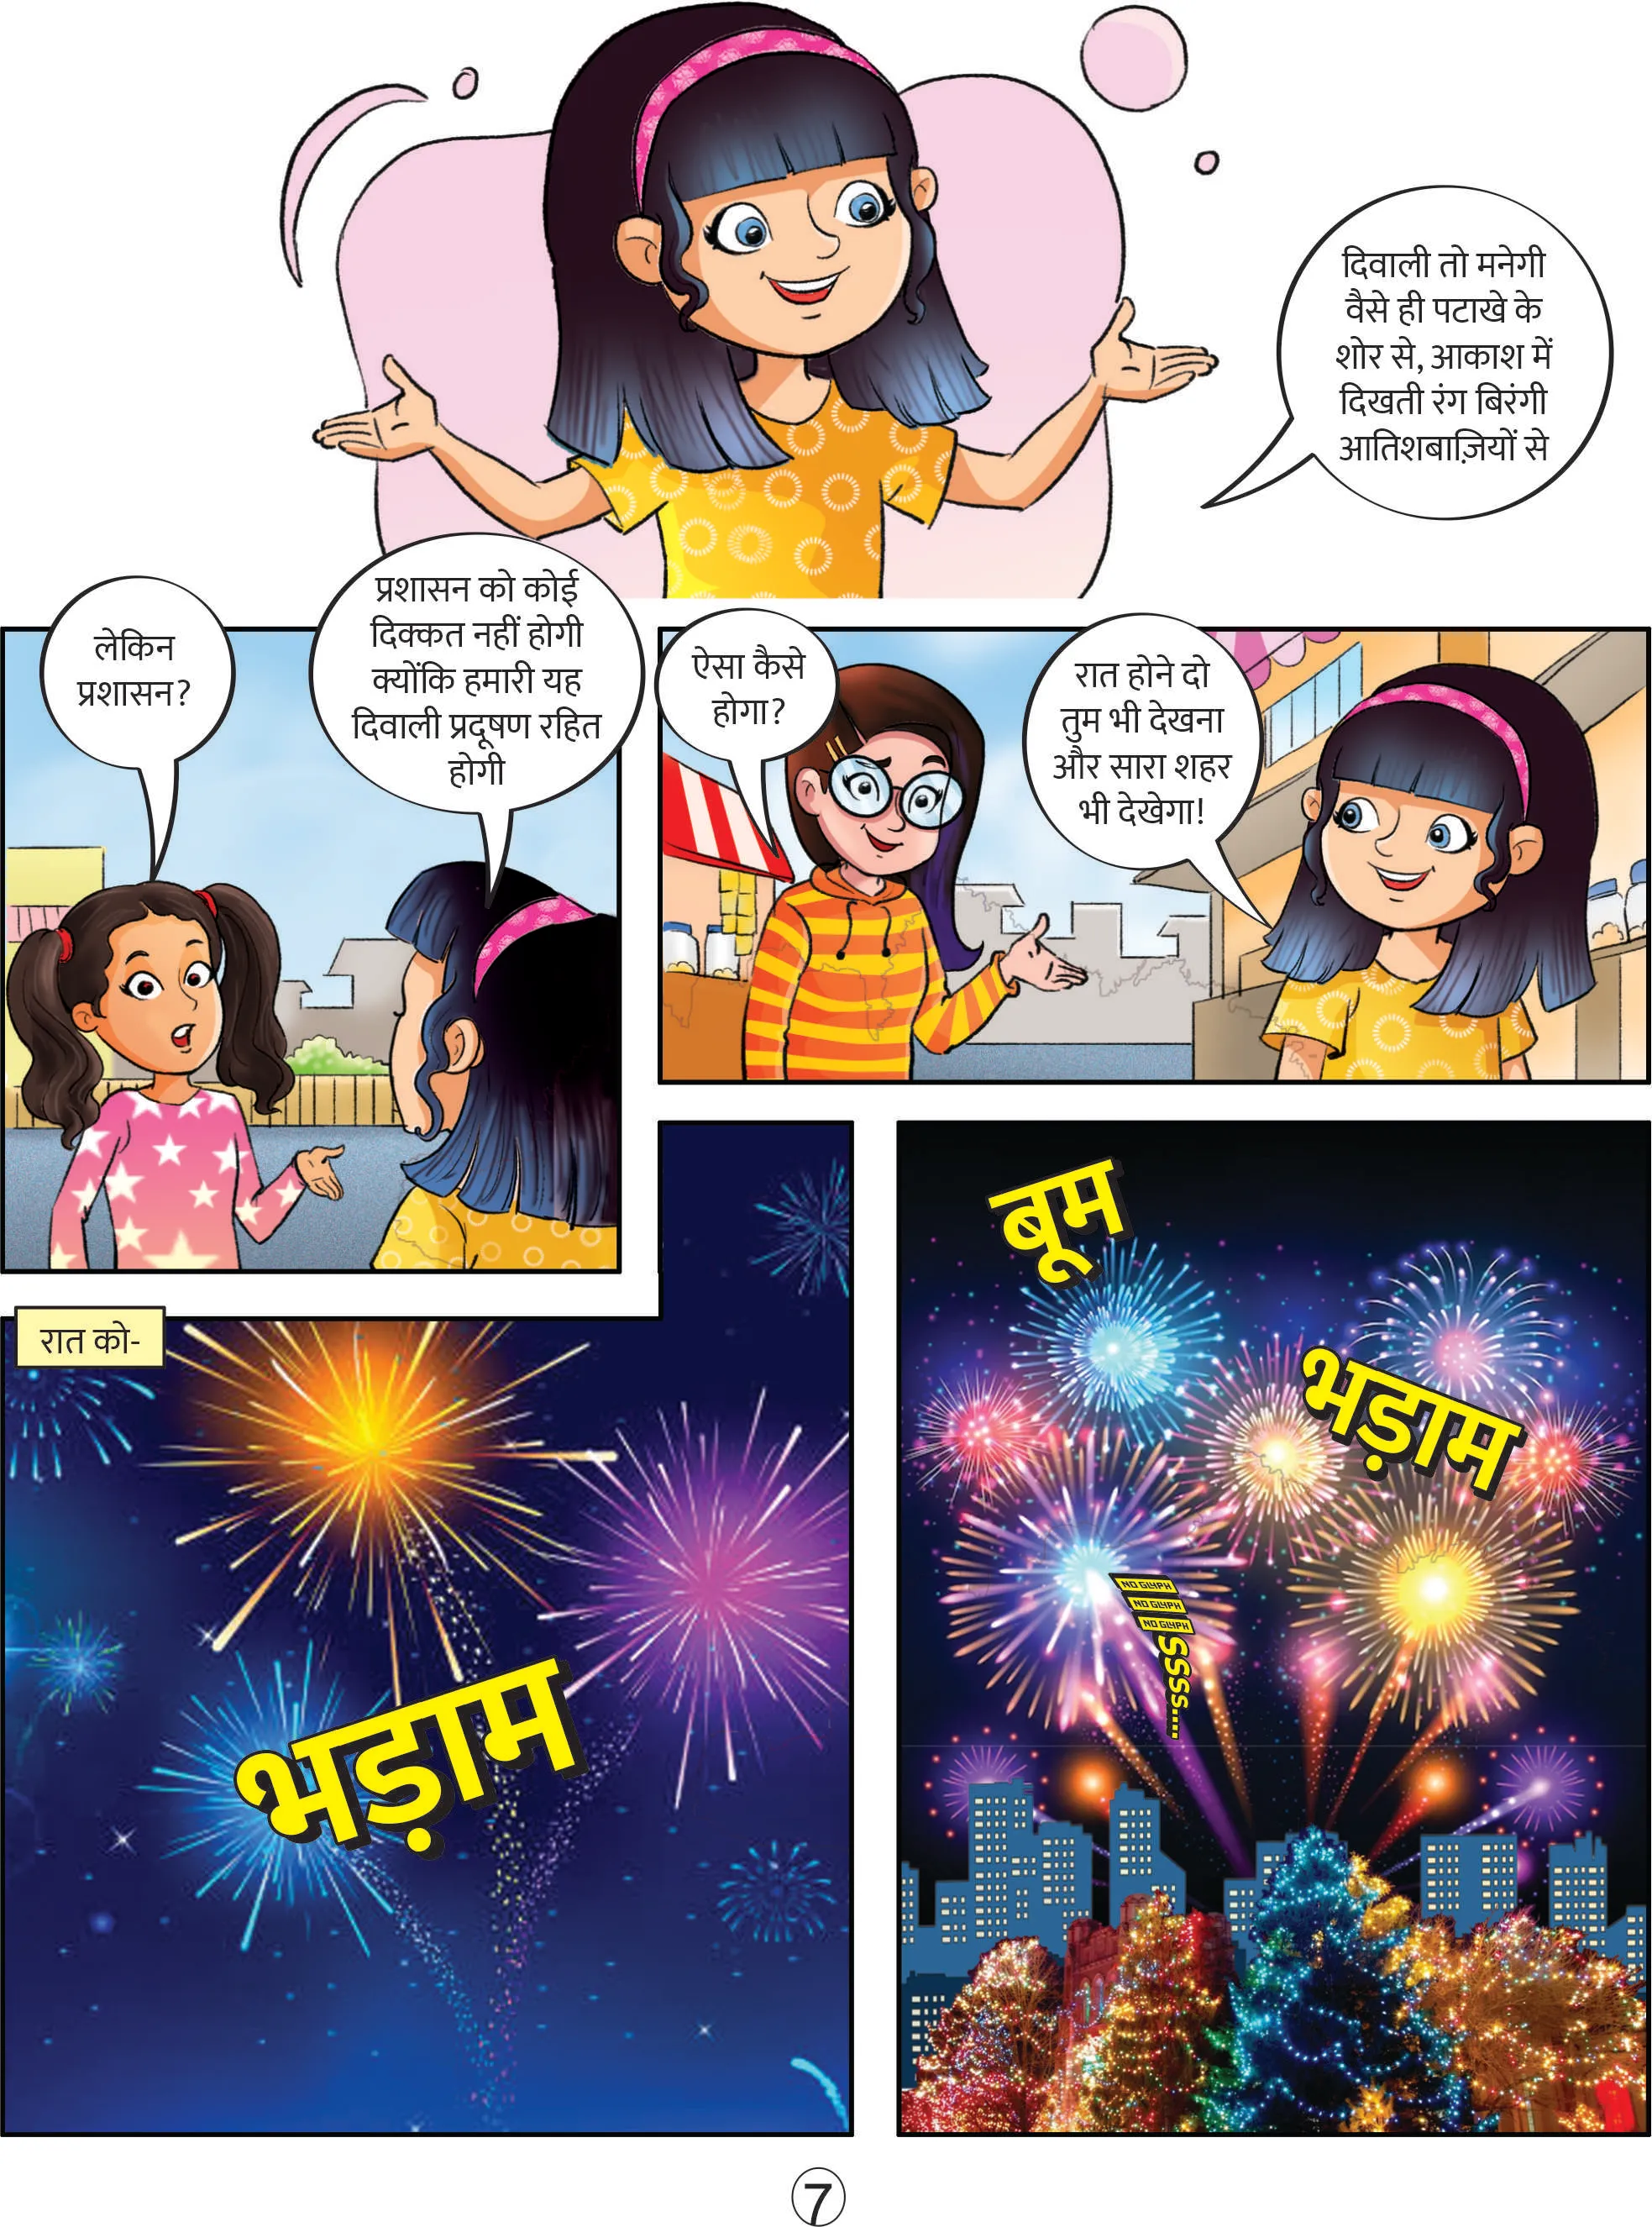 Minni E-Comics Minni celebrating diwali